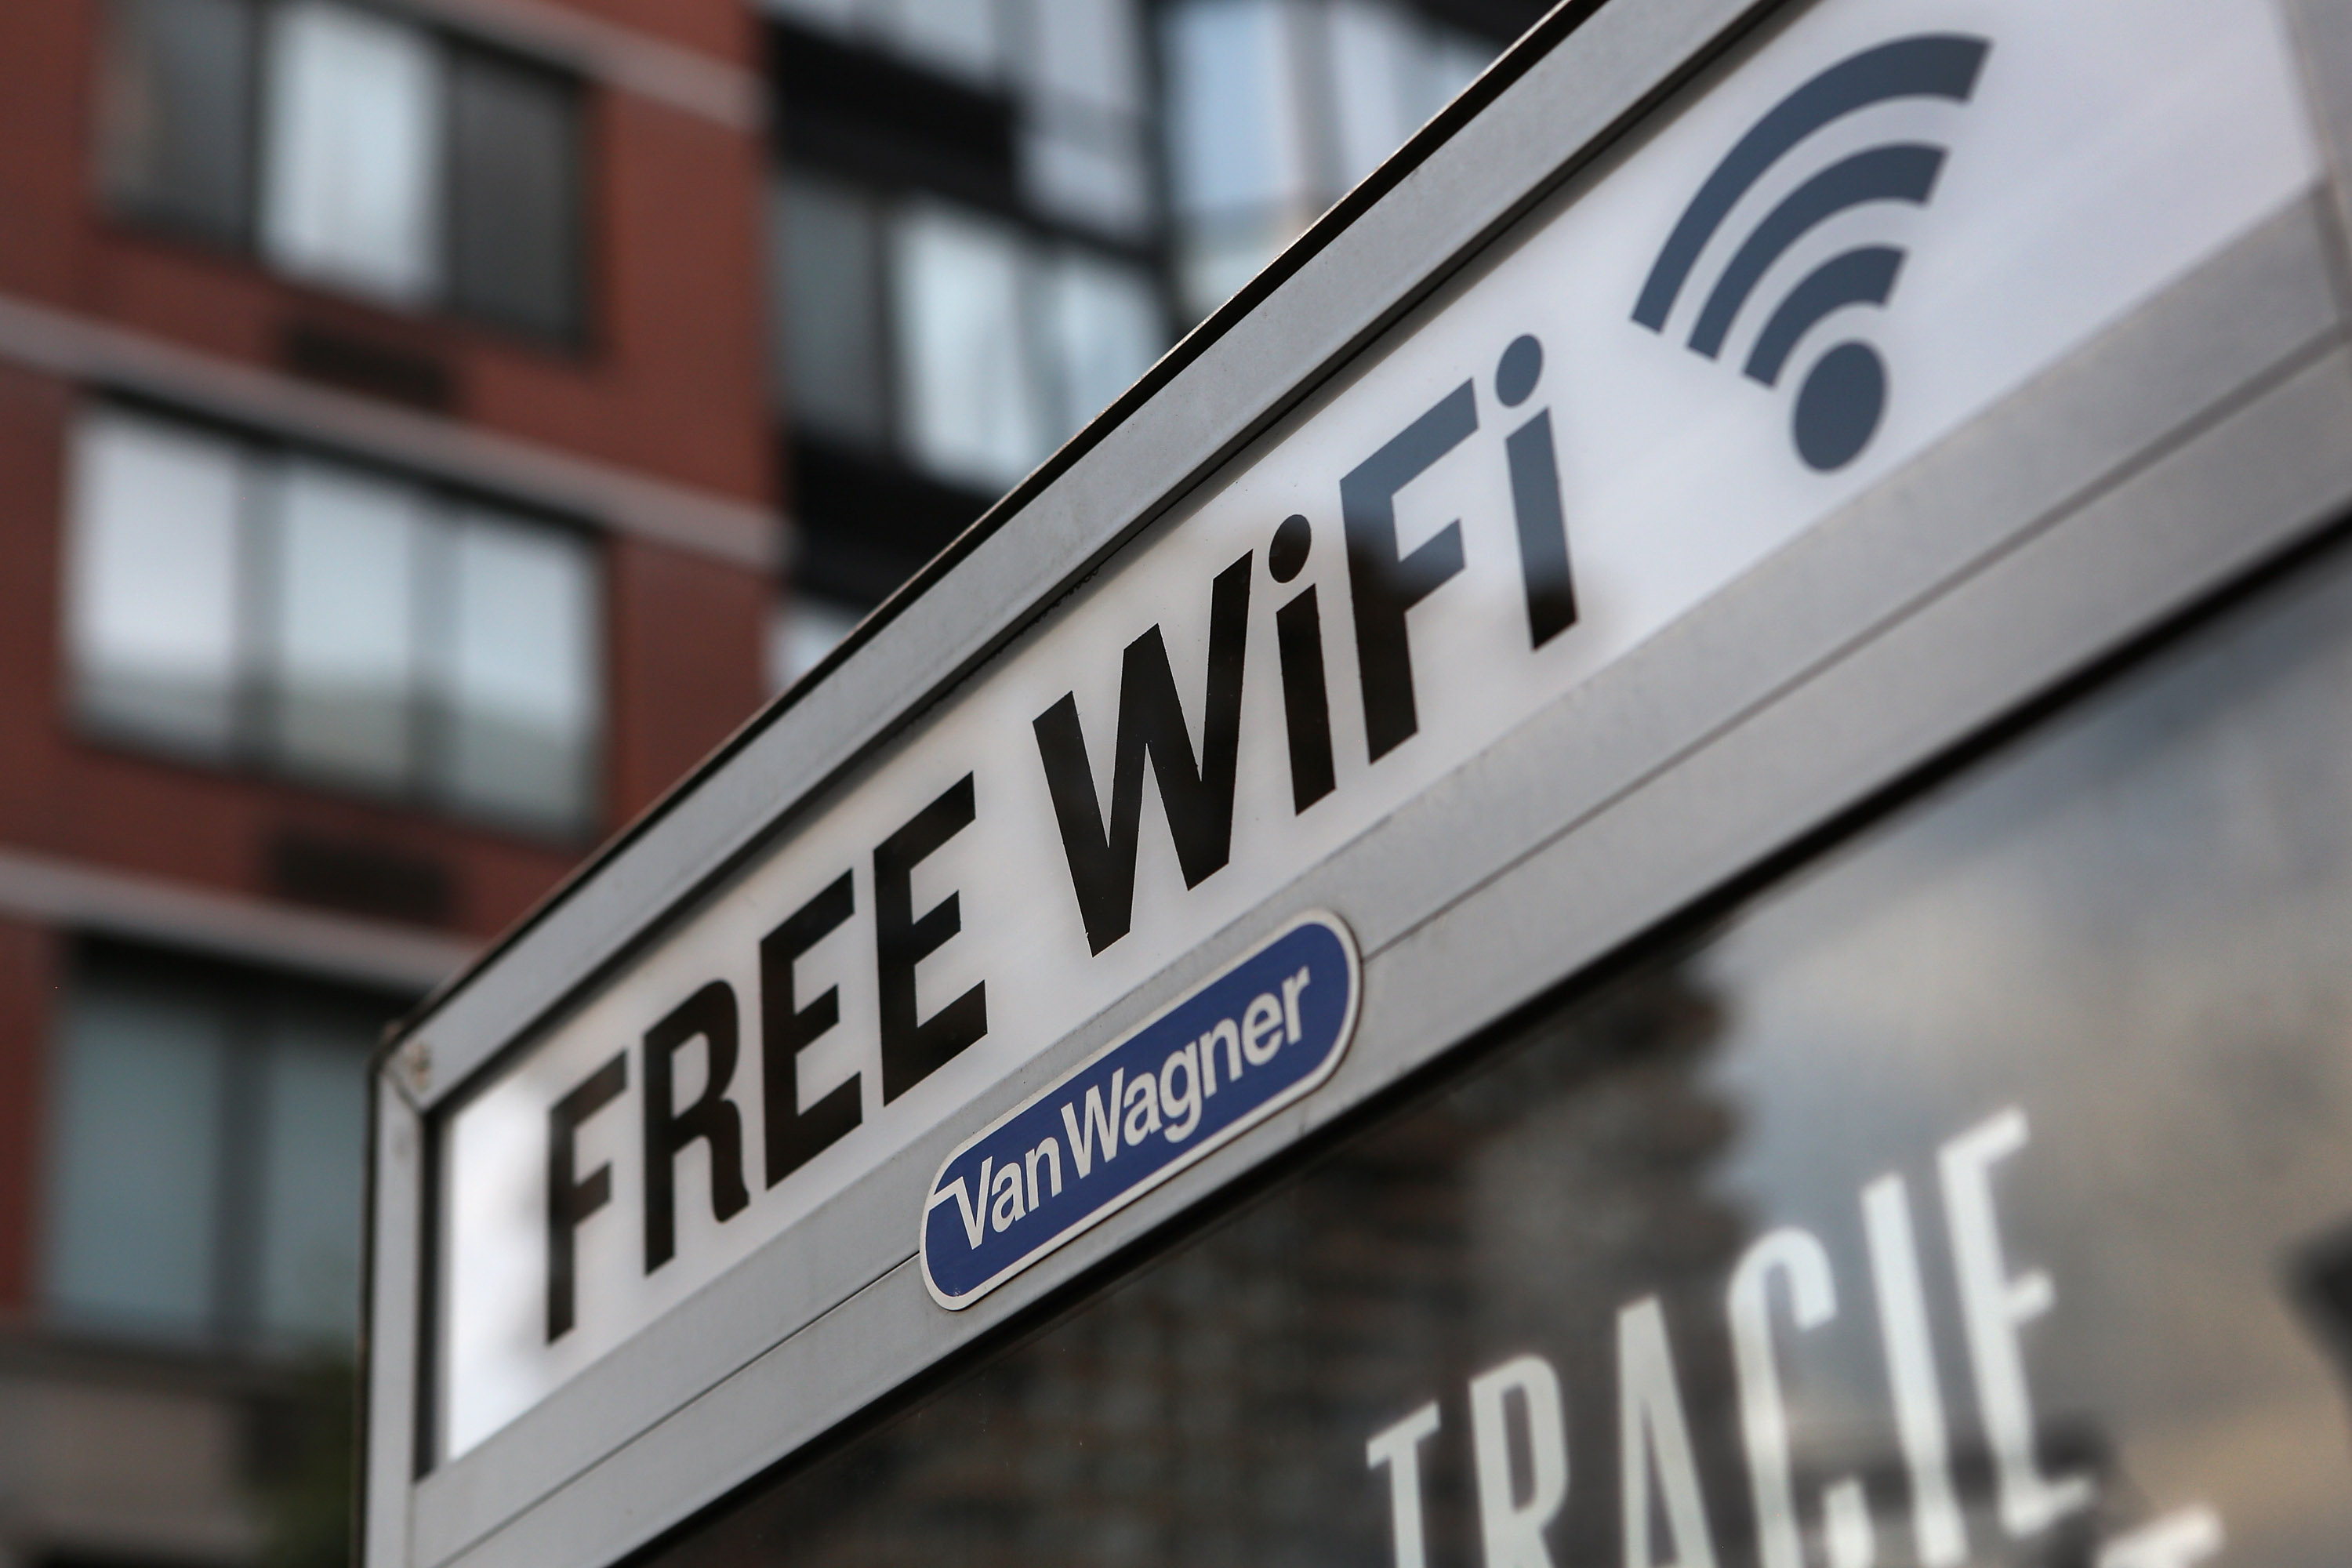 Free public Wi-Fi